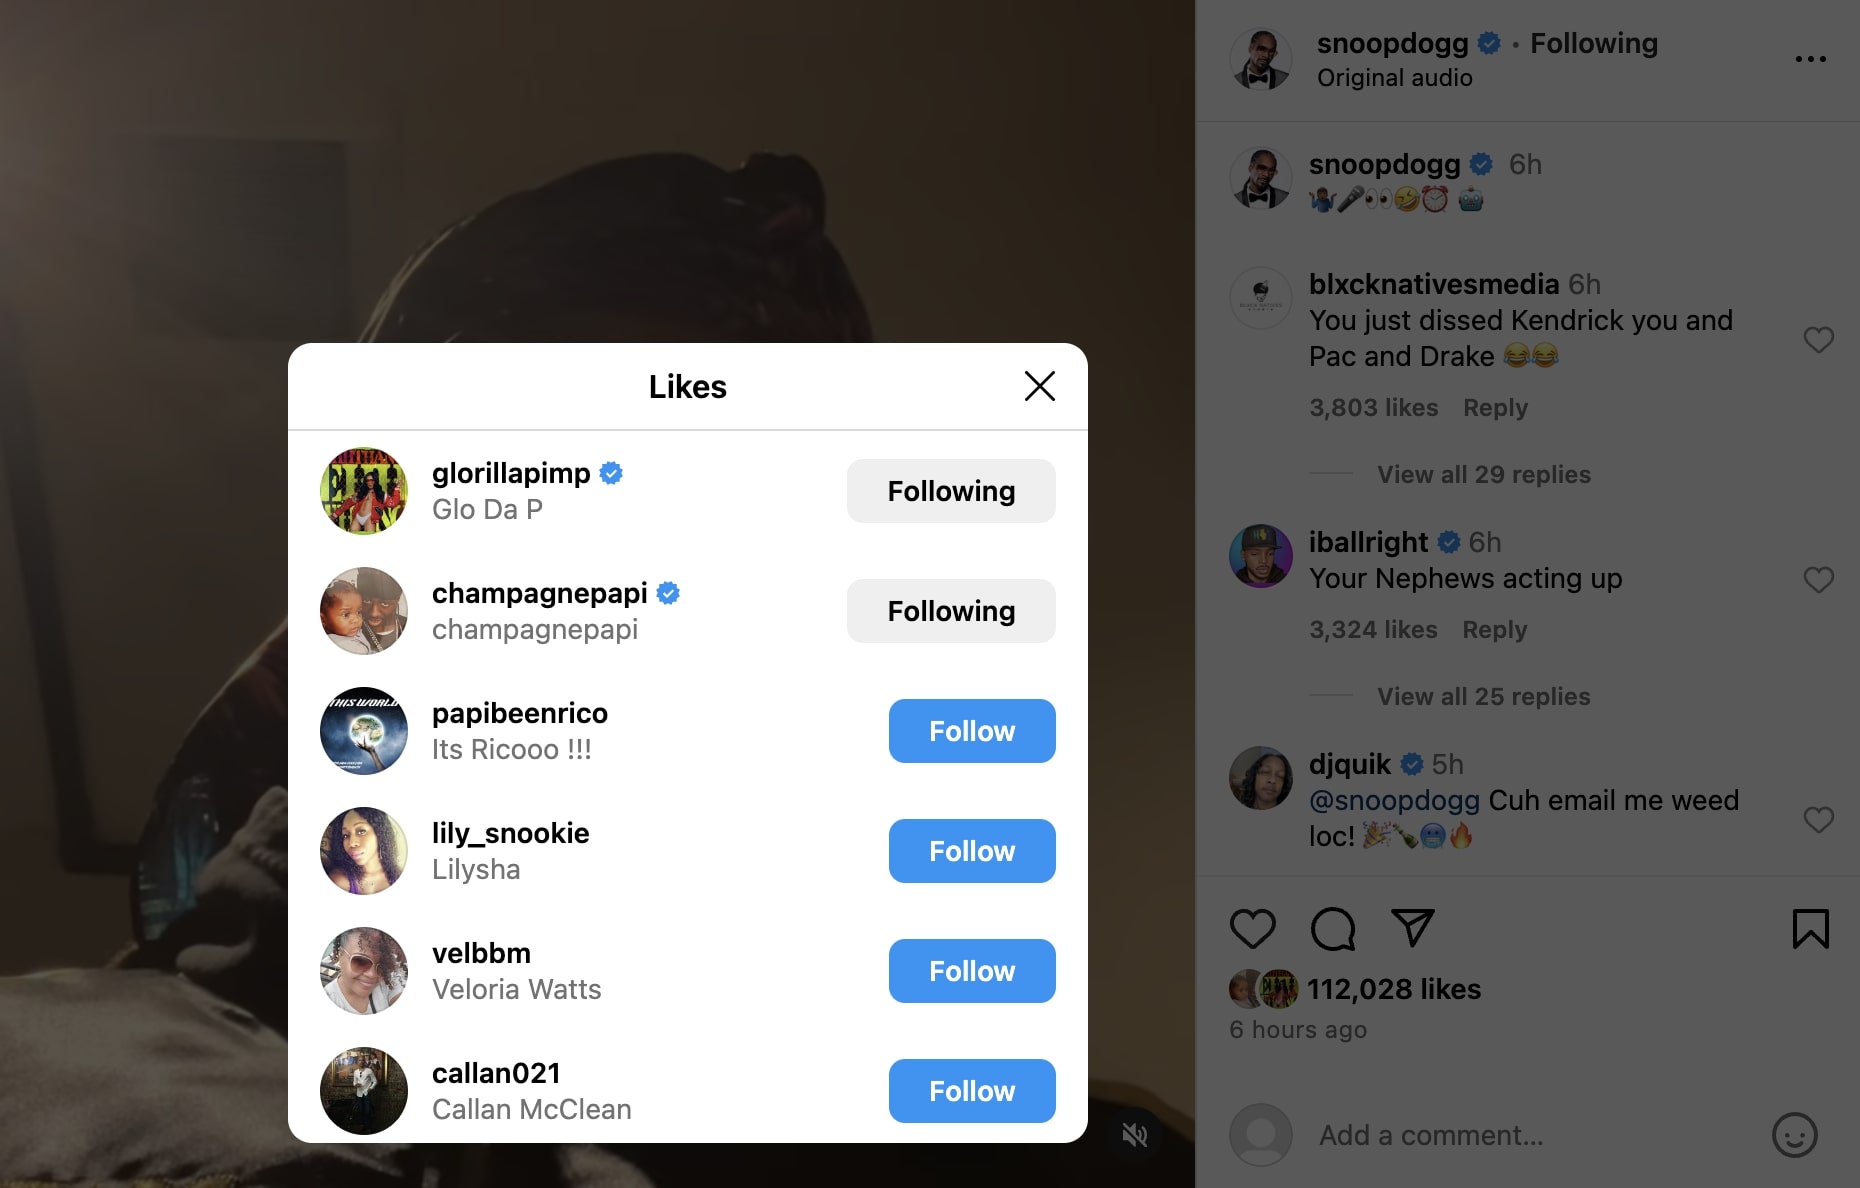 Drake Kendrick Lamar Diss AI Snoop Dogg Response Reaction Hip Hop News